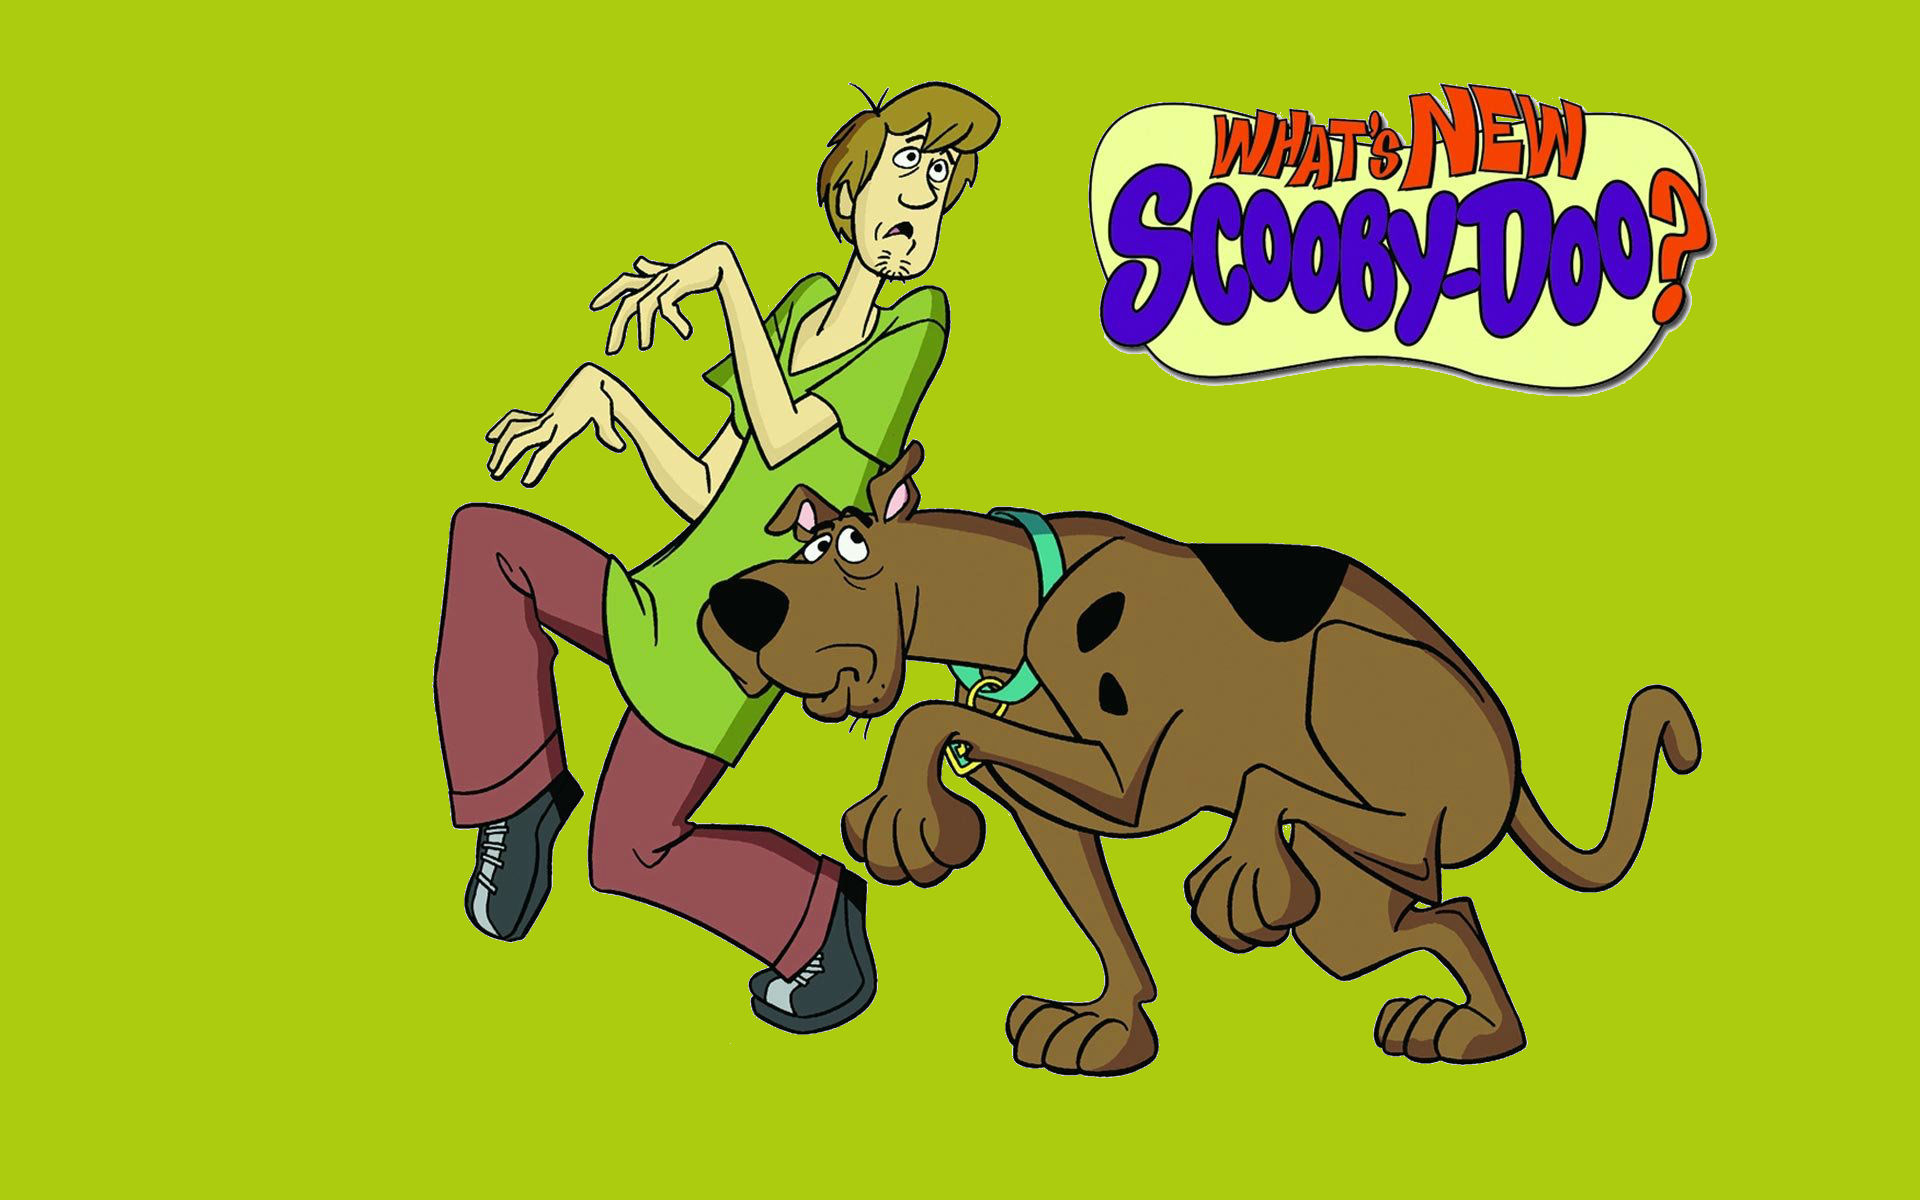 Scooby Doo Wallpapers Pack 66: Scooby Doo Wallpaper, 37 Scooby Doo